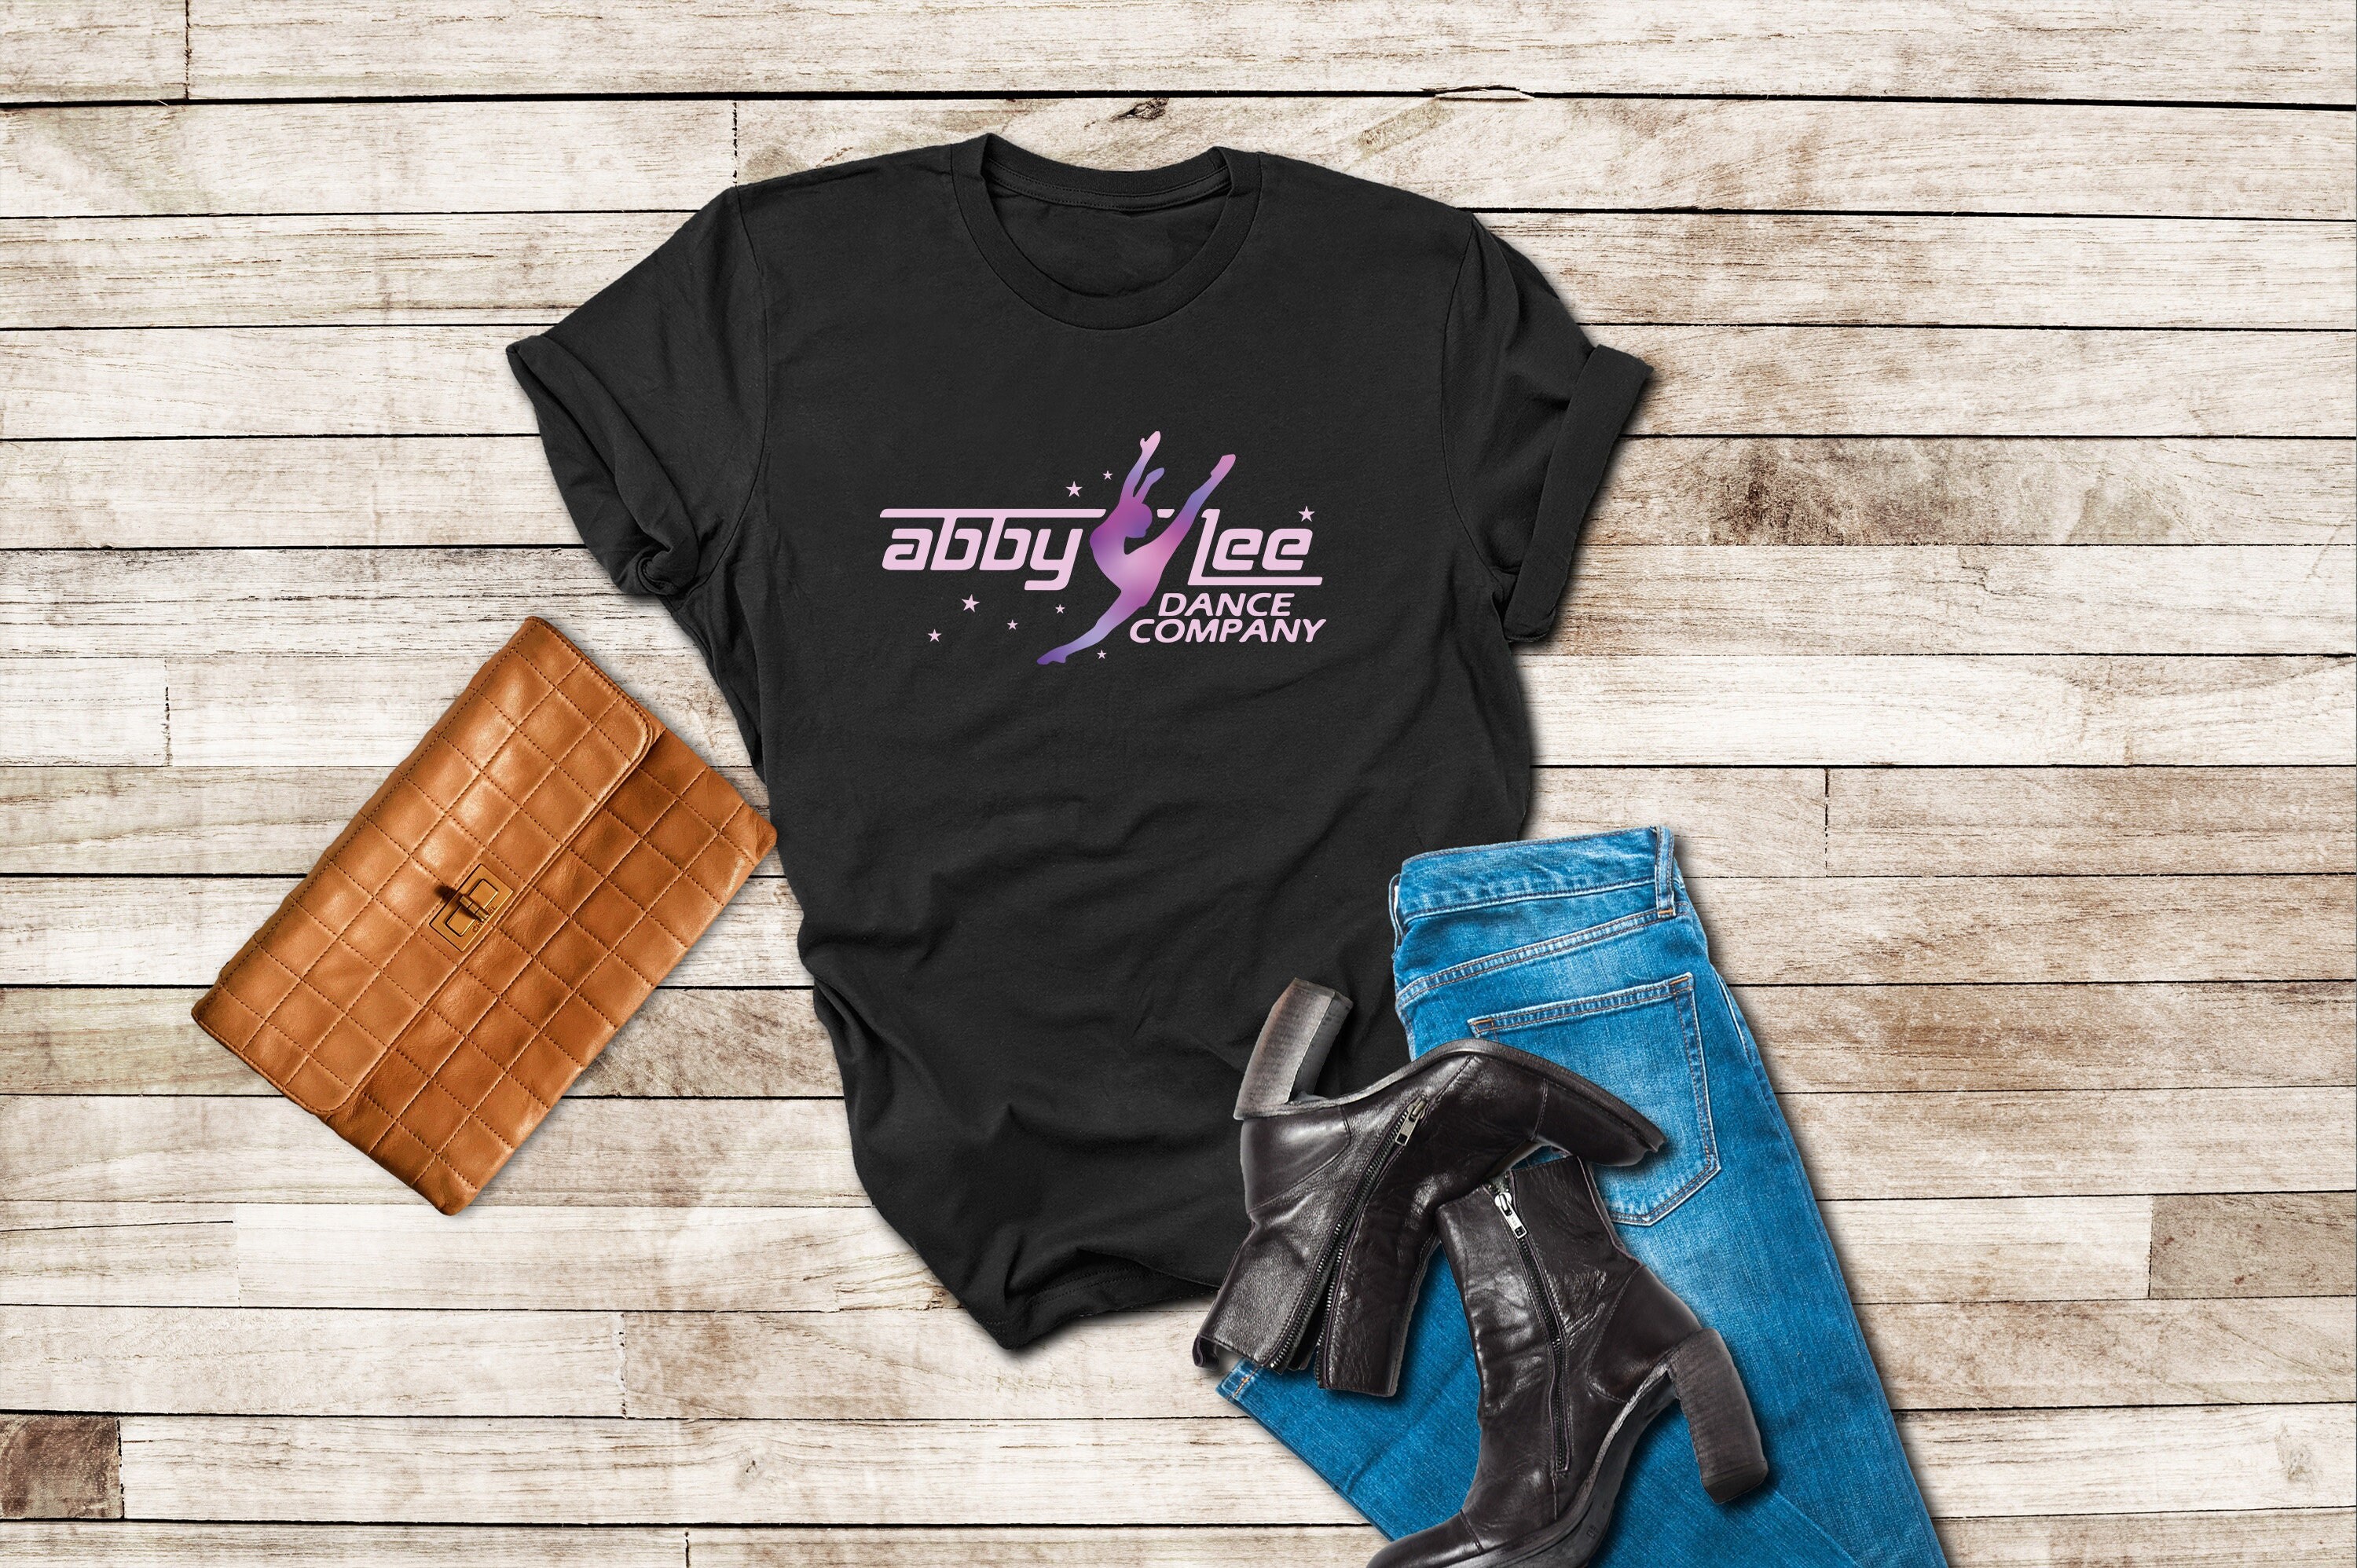 Abby Lee Dance Company Logo Unisex T-Shirt for Men Women - Inspire Uplift